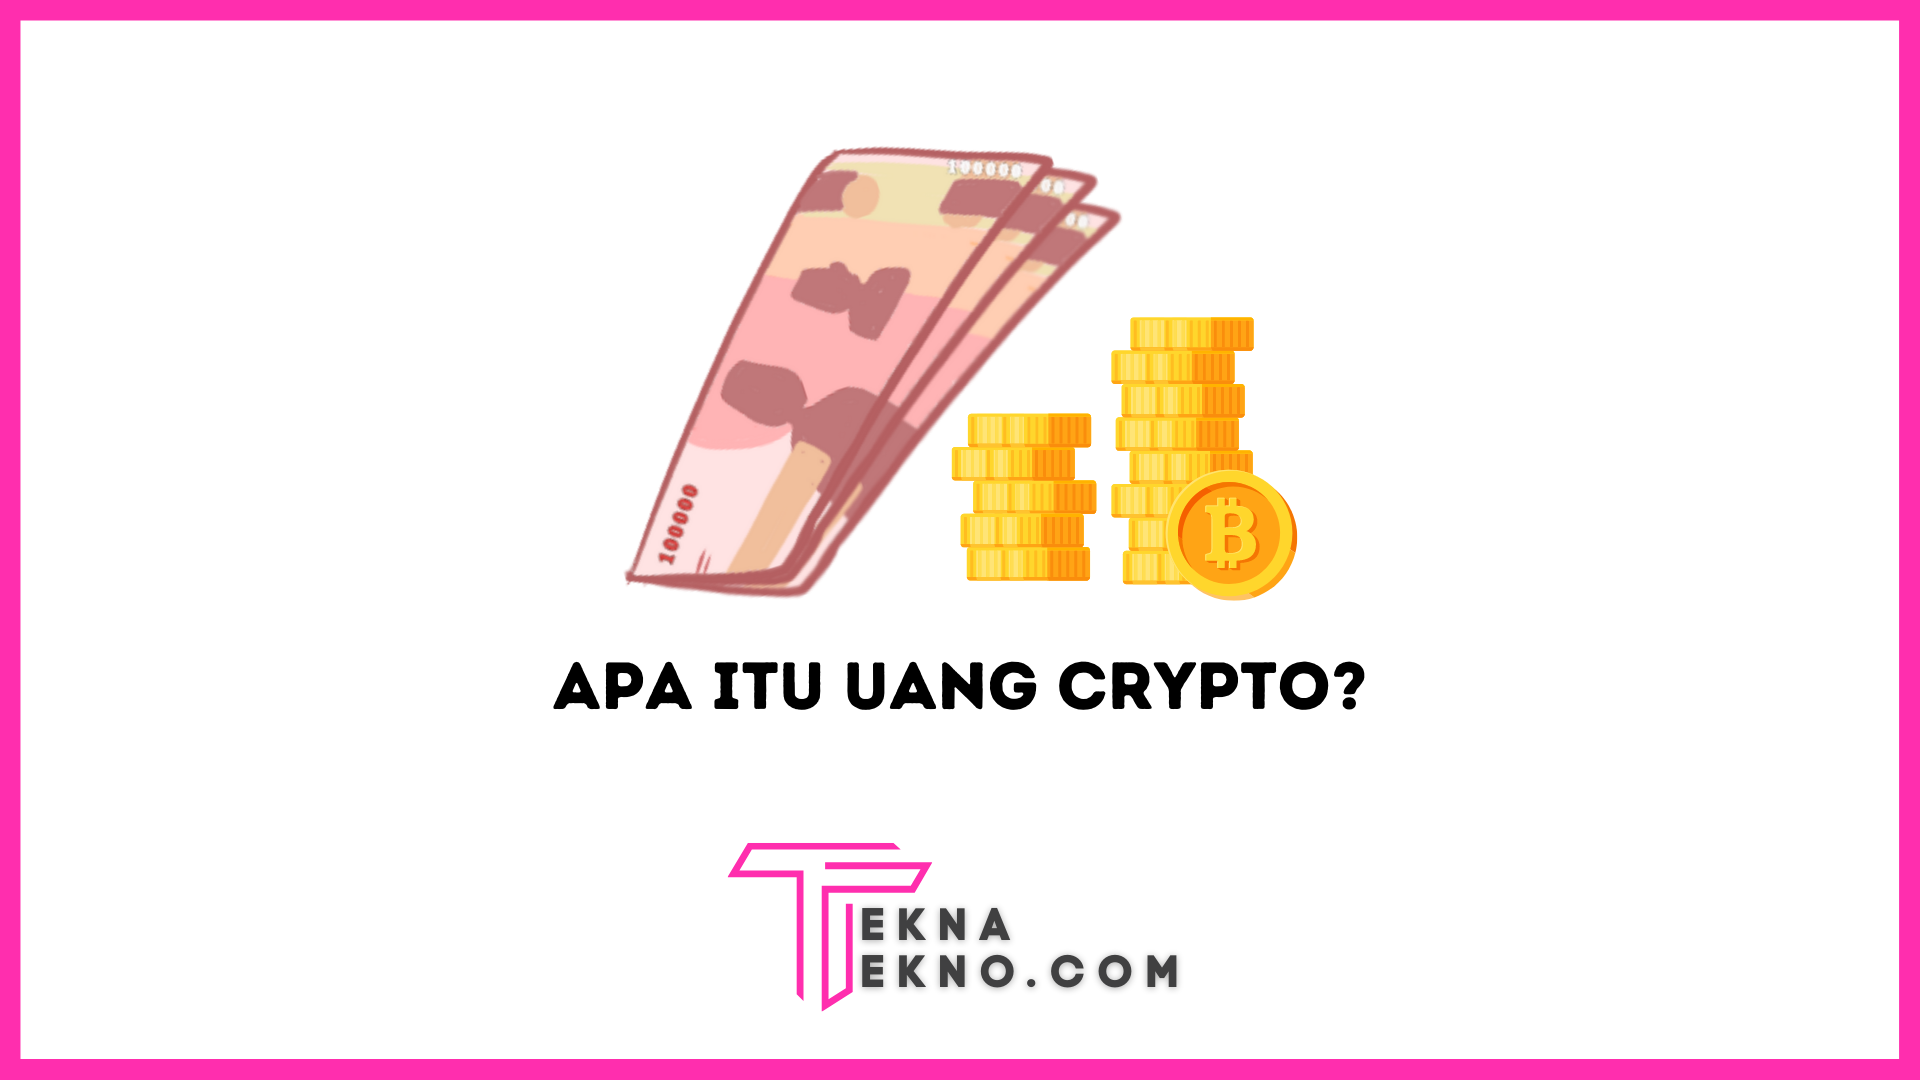 Apa itu Uang Crypto? Cara Membeli dan Menggunakan dengan Aman